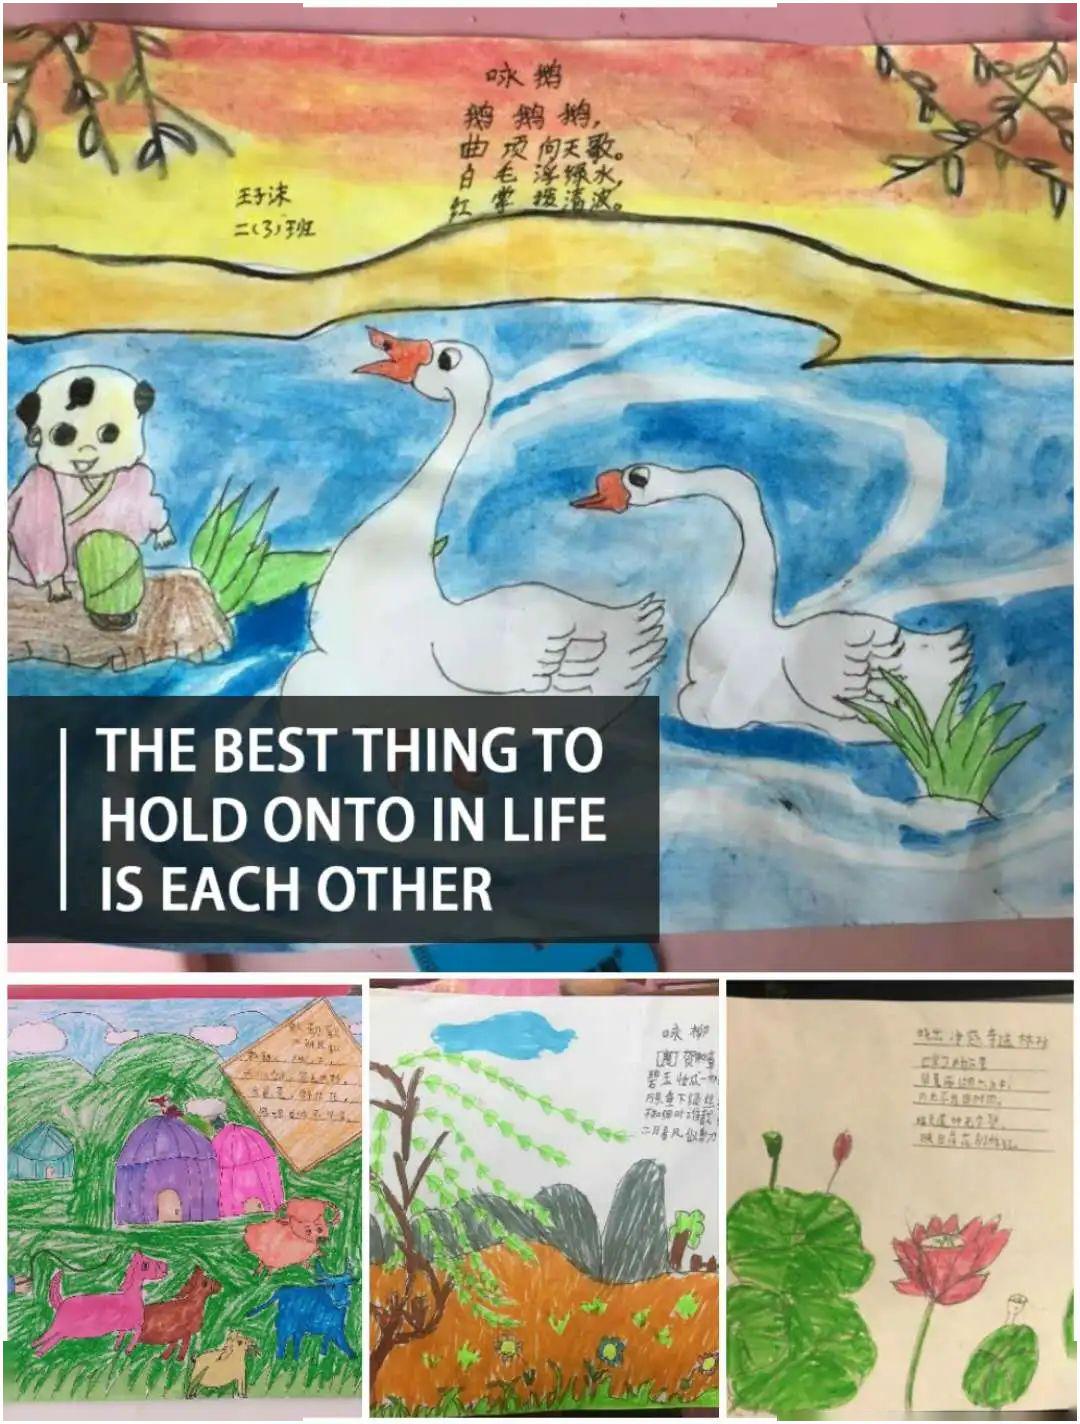 【中小学】诗情画意,精彩妙绘||记二年级组诗配画活动